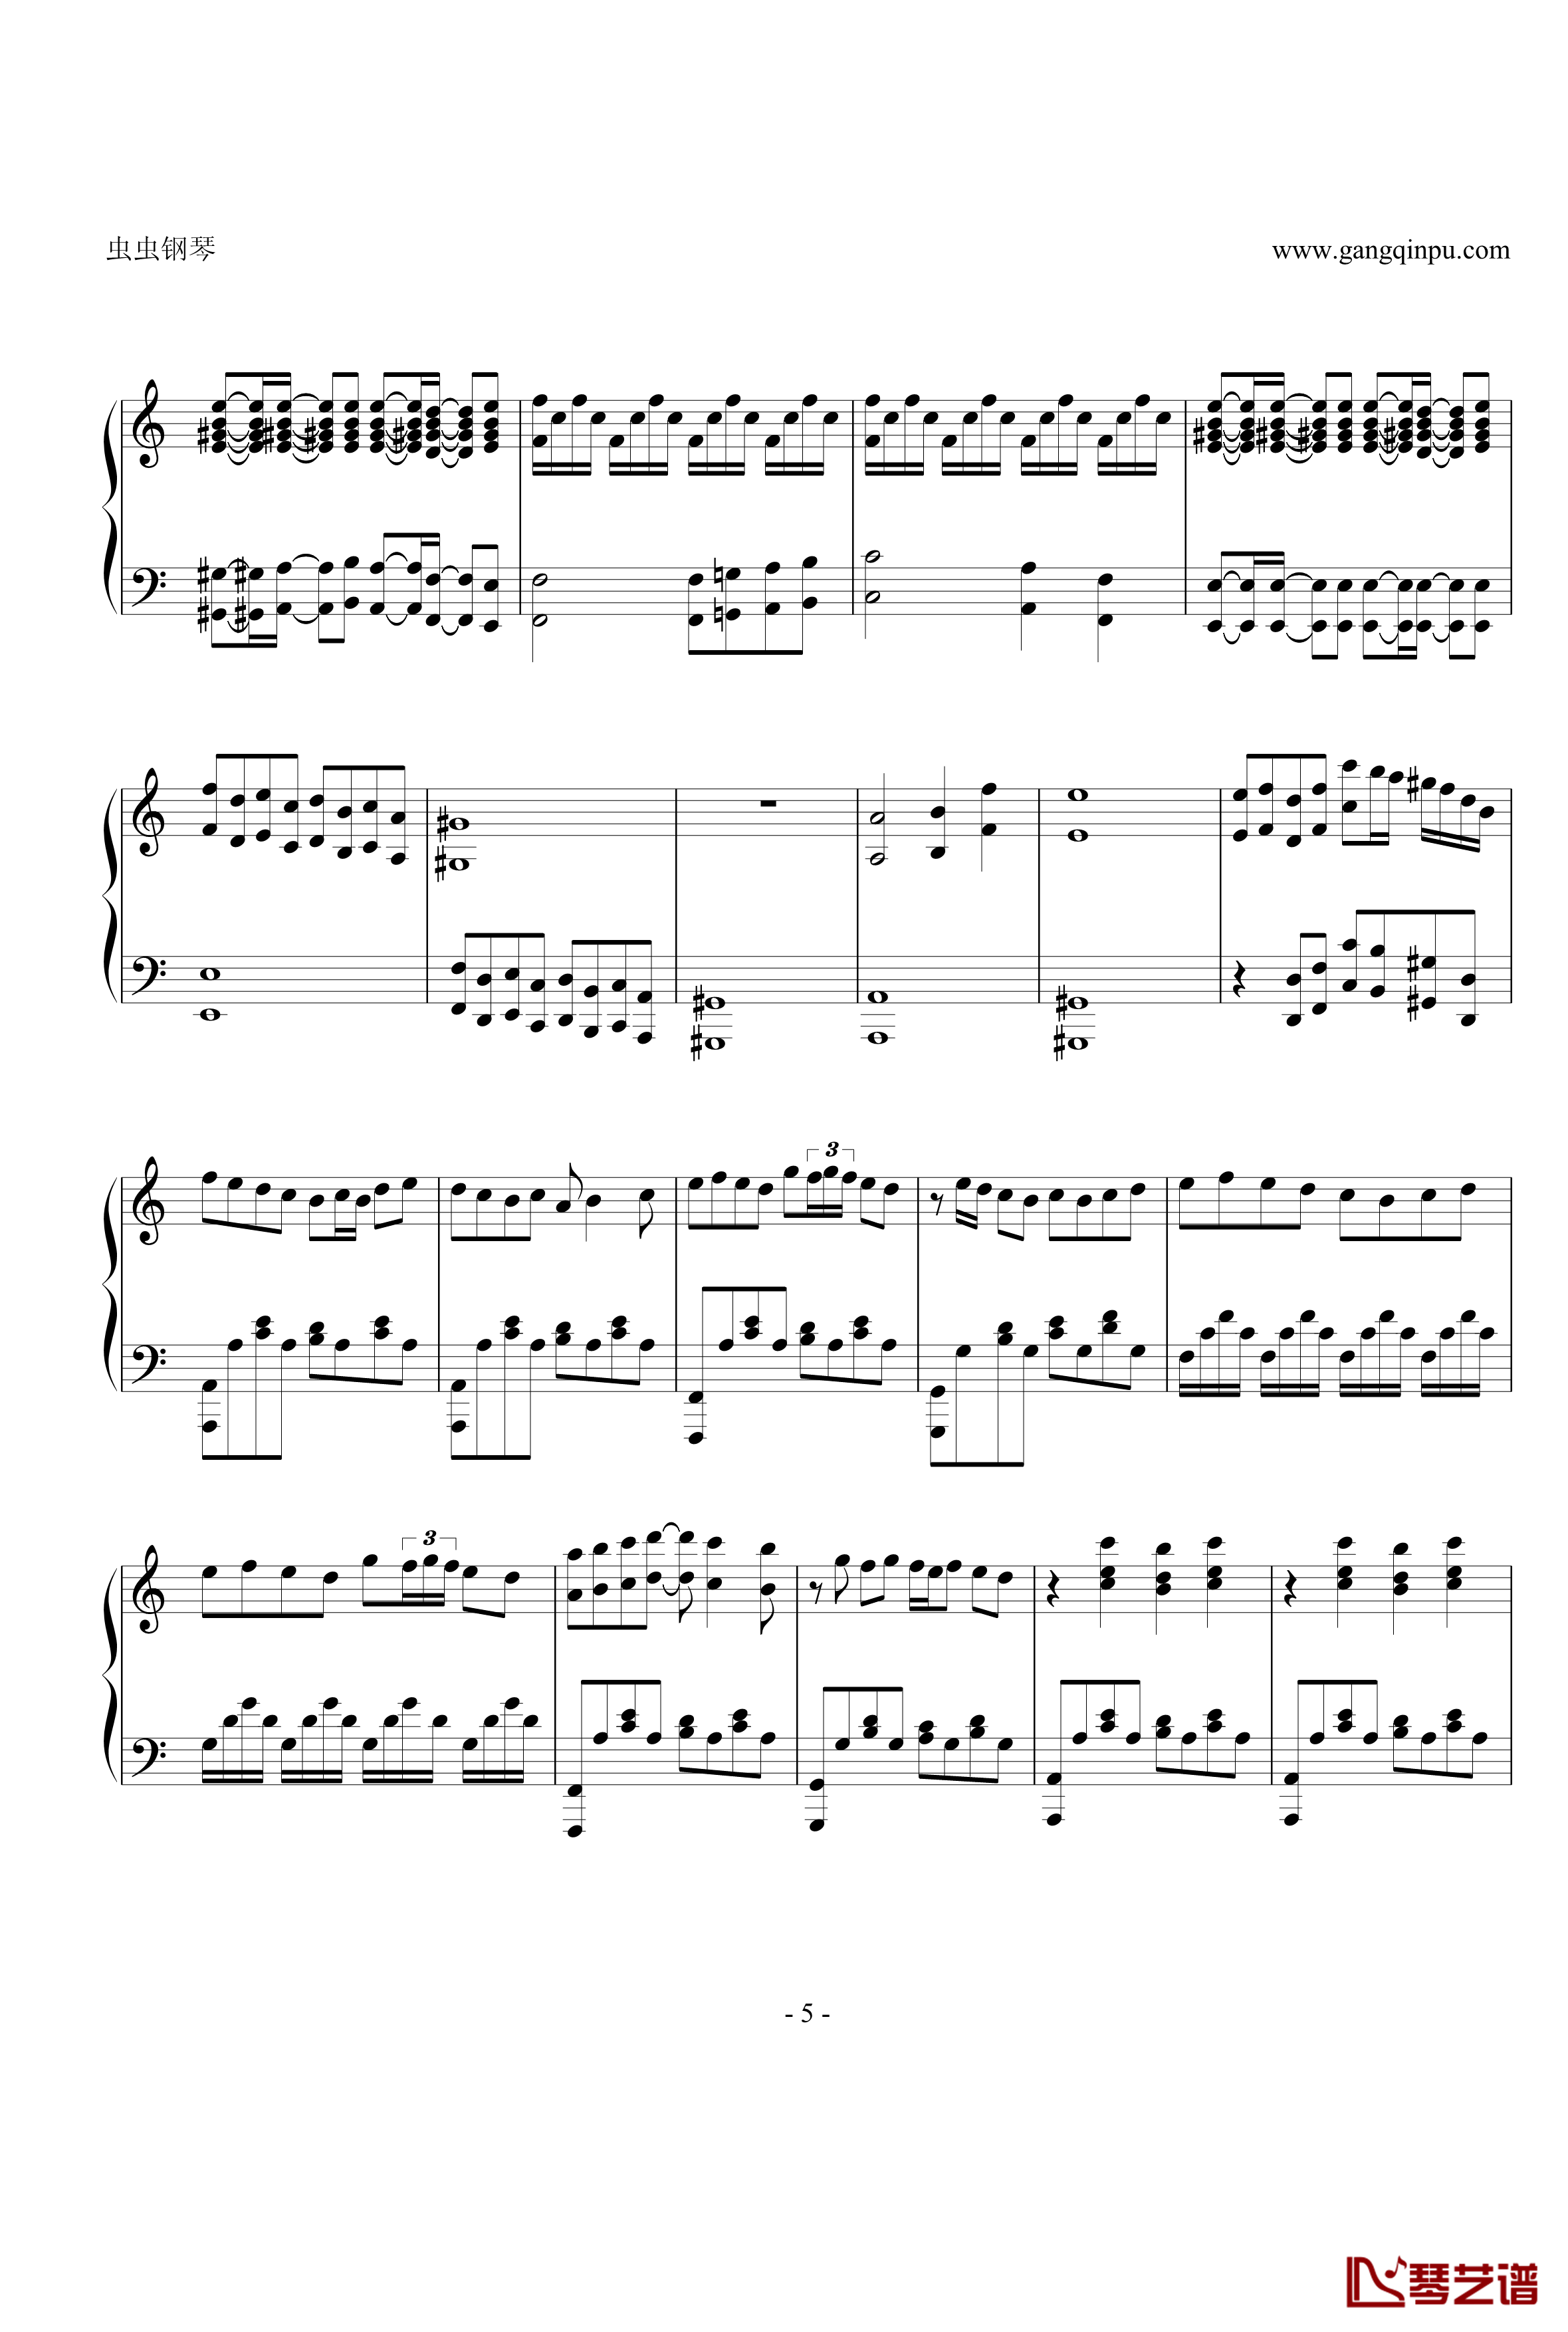 亡灵钢琴钢琴谱-修改版-电锯惊魂5